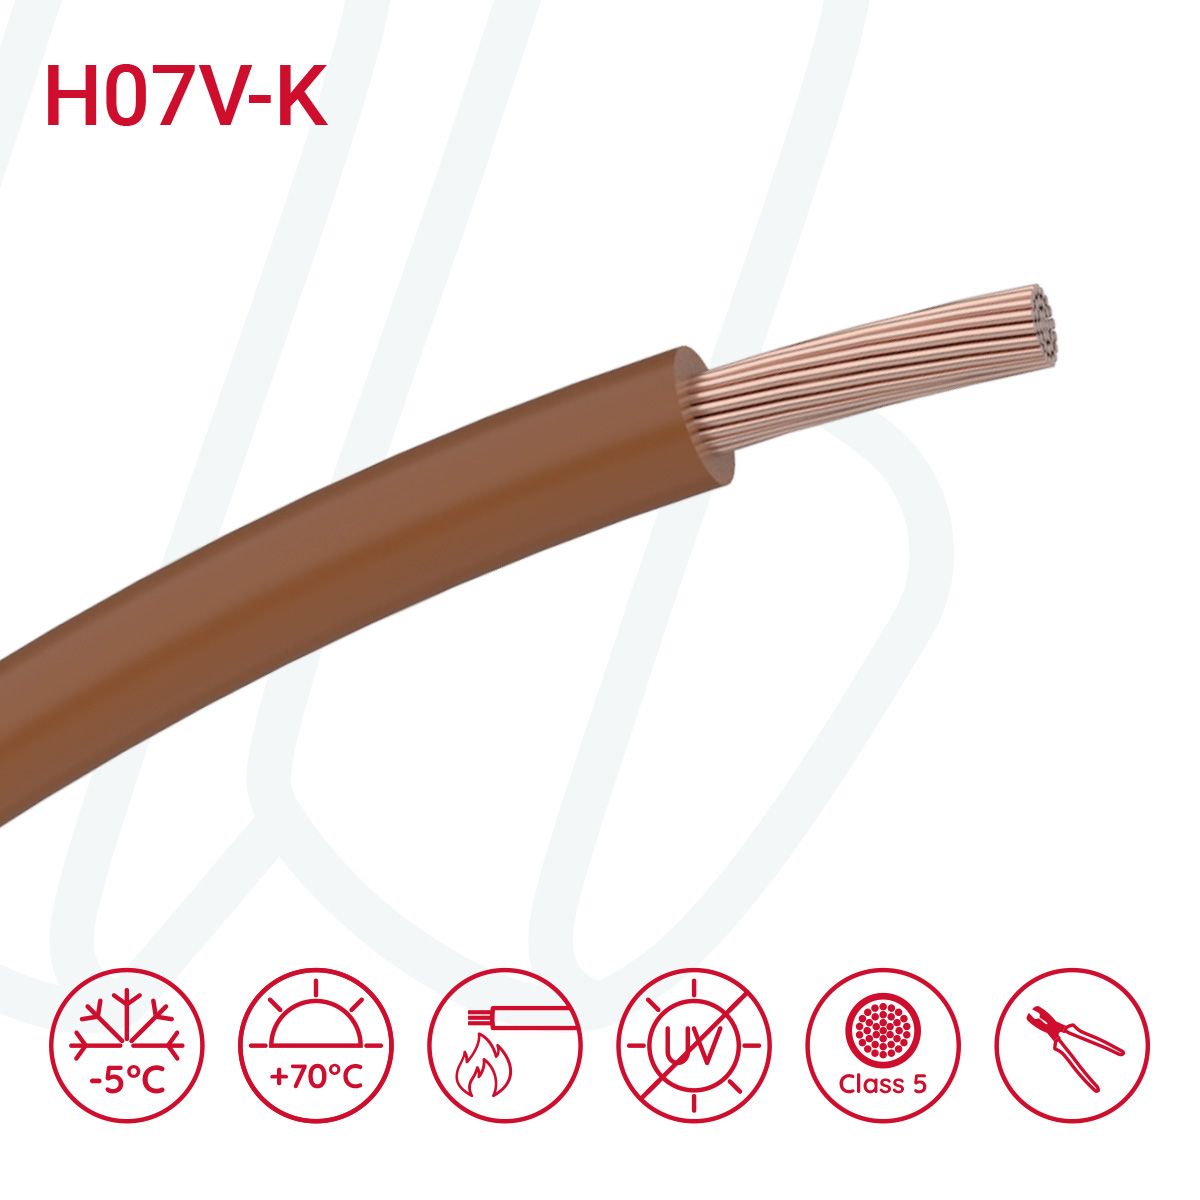 Провід монтажний гнучкий H07V-K 10 мм² коричневий, 01, 10